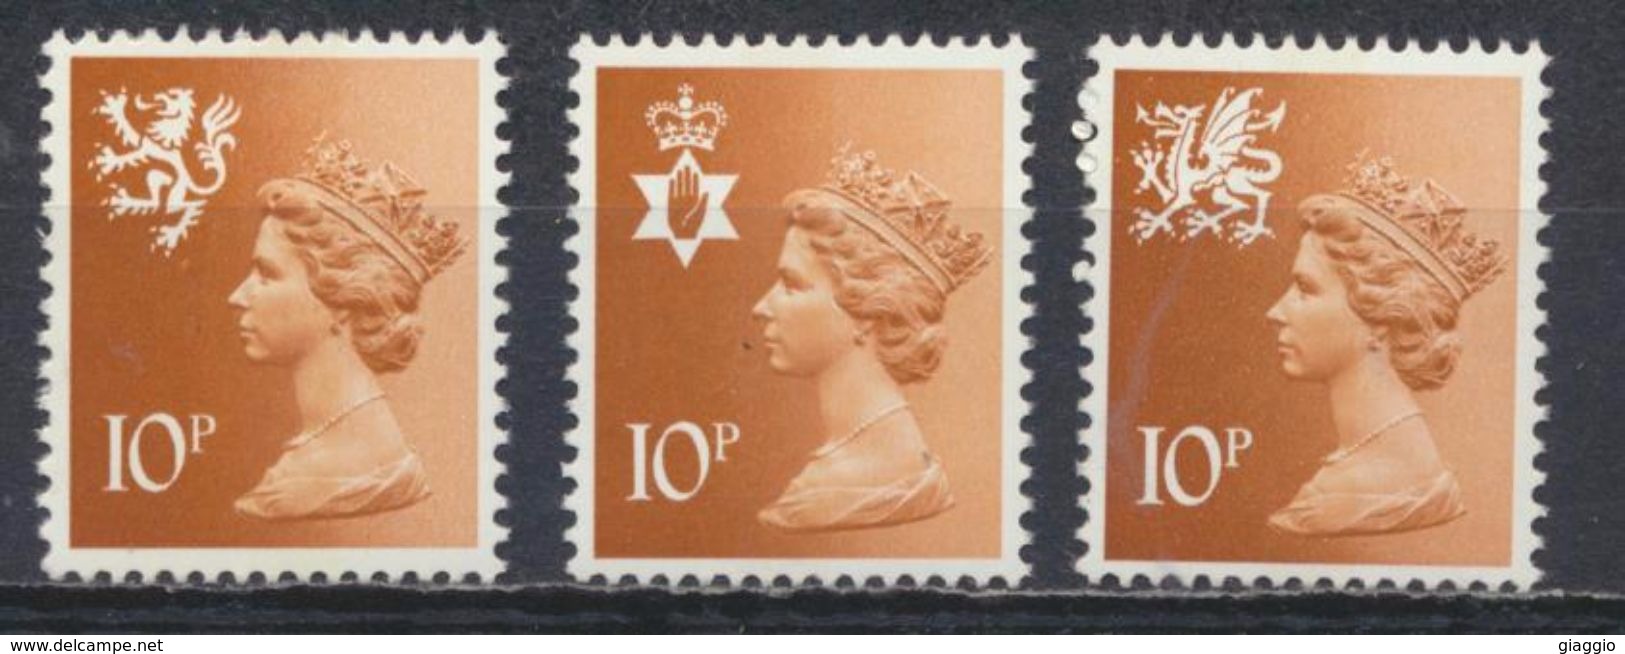 °°° UK ENGLAND - Y&T N°807/9 - 1976 MNH °°° - Unused Stamps